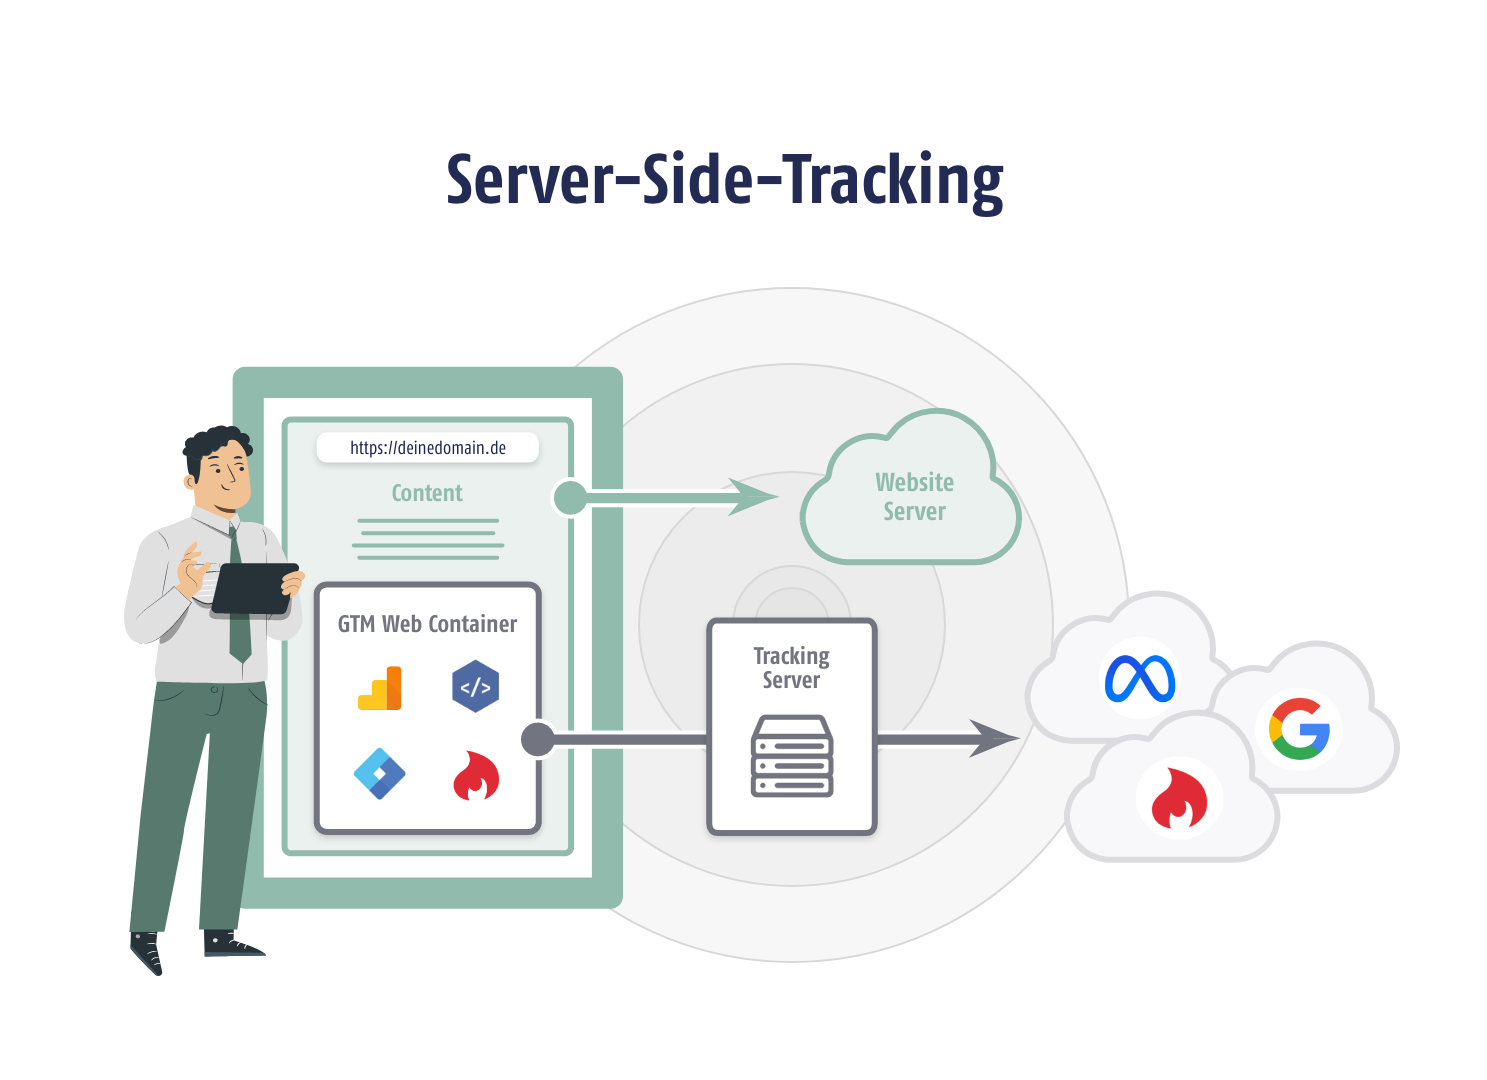 Server-Side Tracking